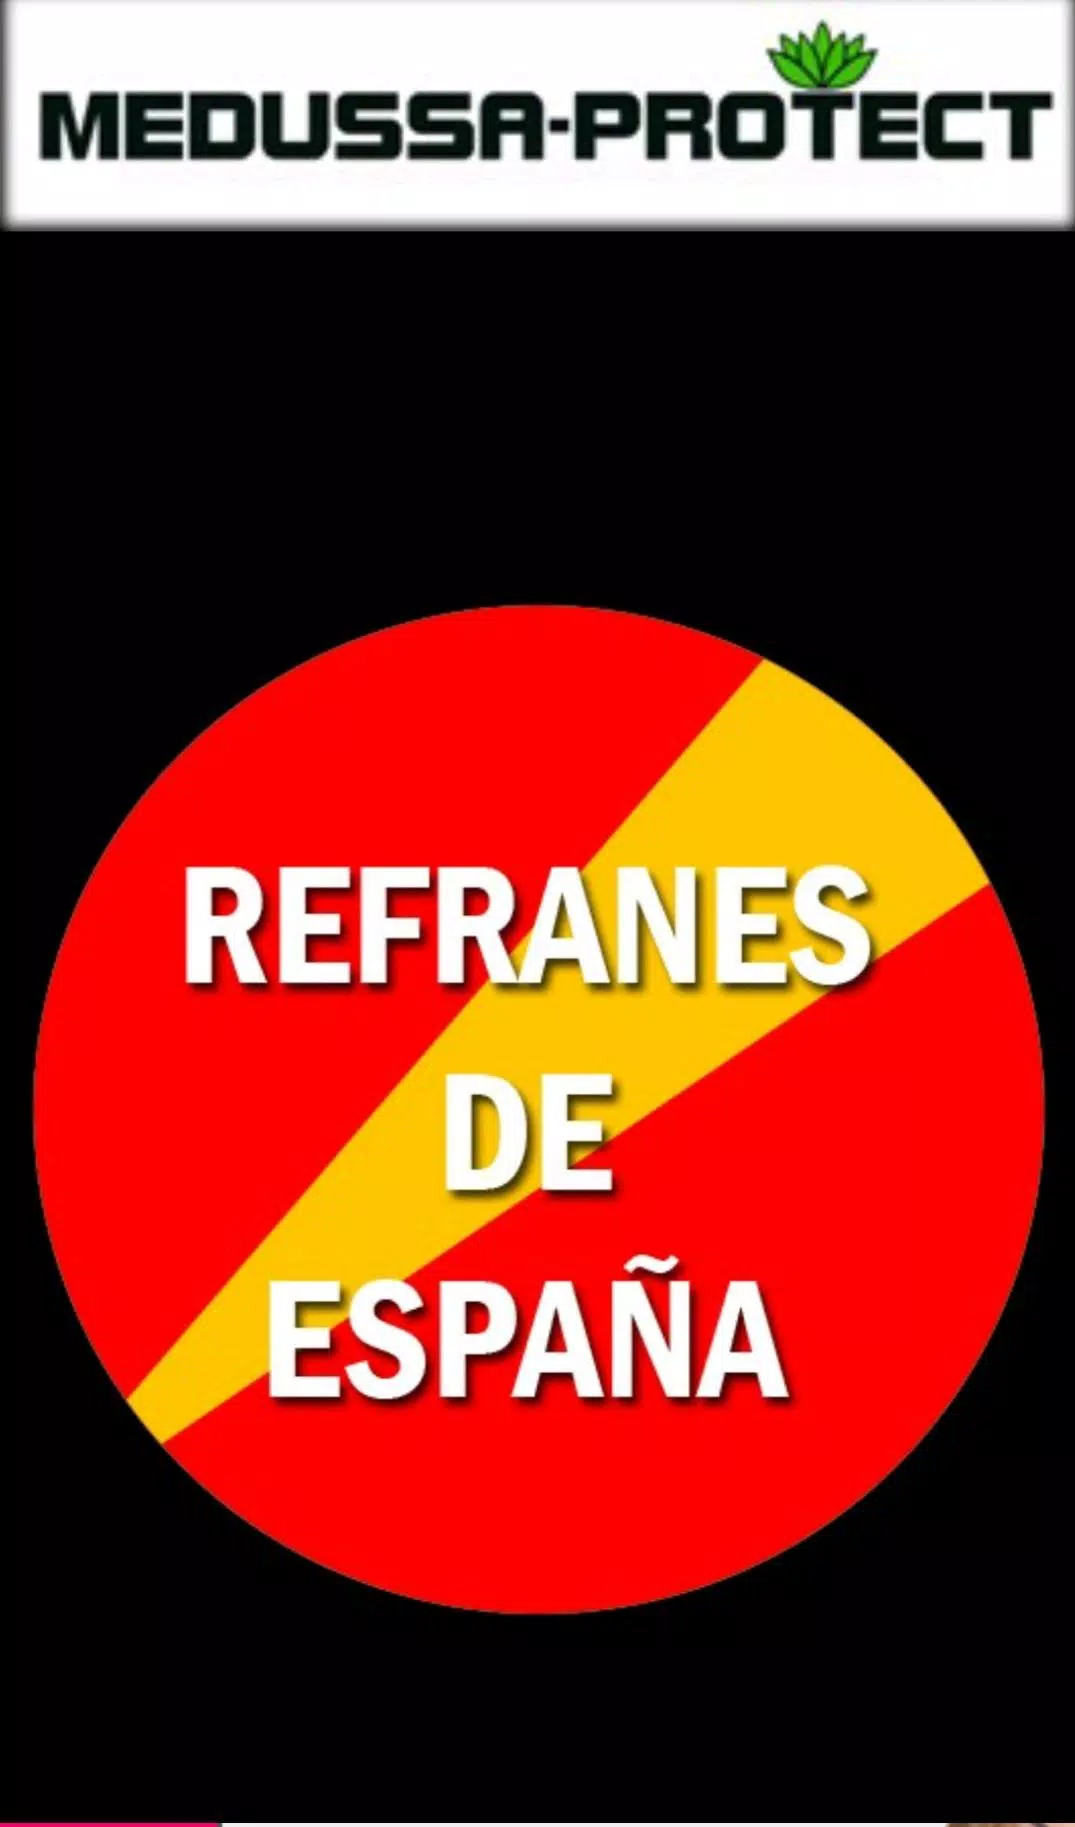 Refranes de España APK for Android Download